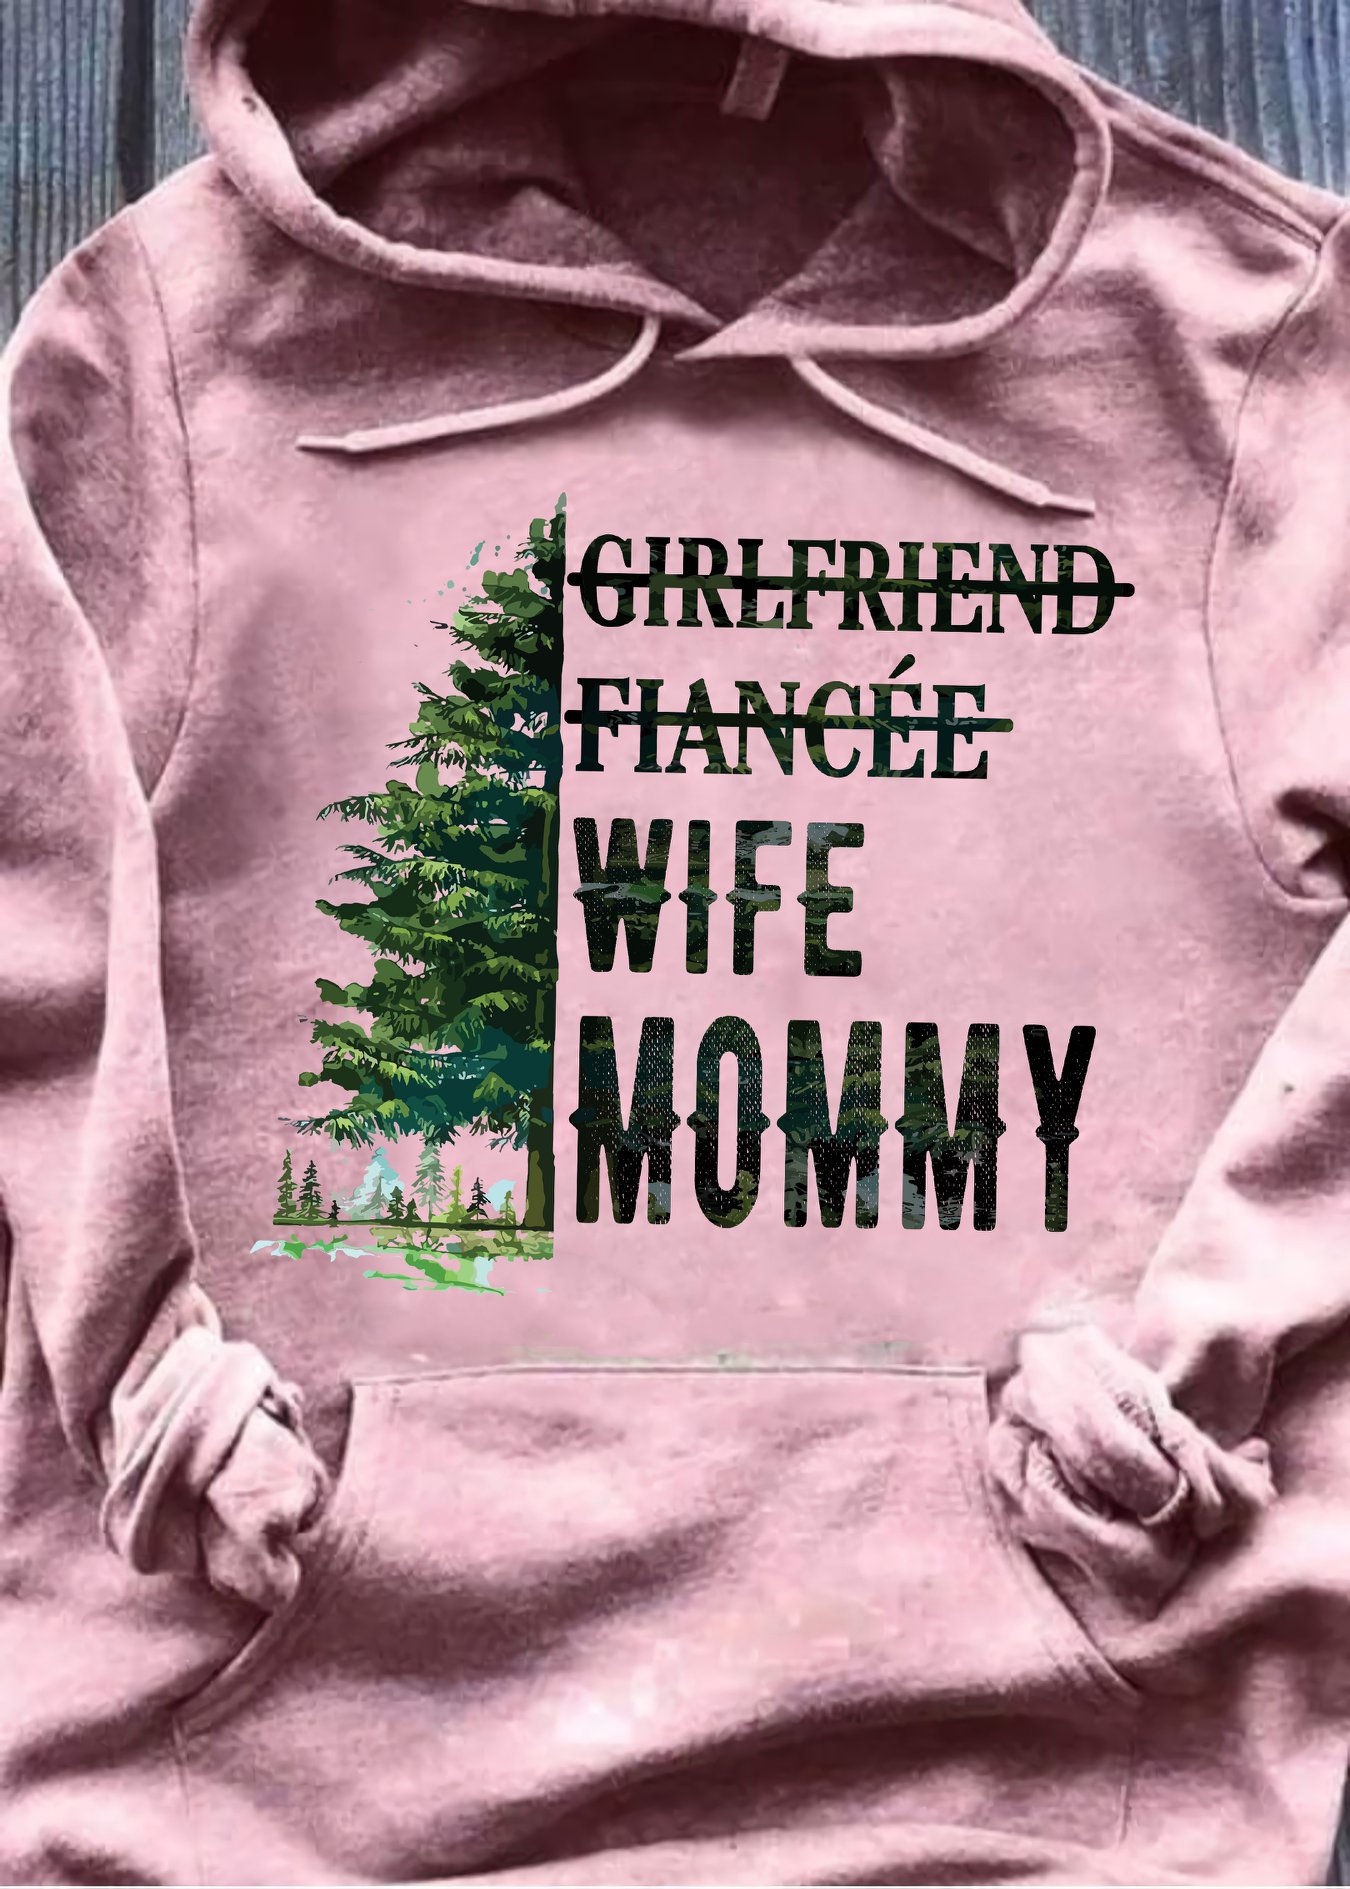 Girlfriend, Fiancee, Wife, Mommy - Tree in the wood